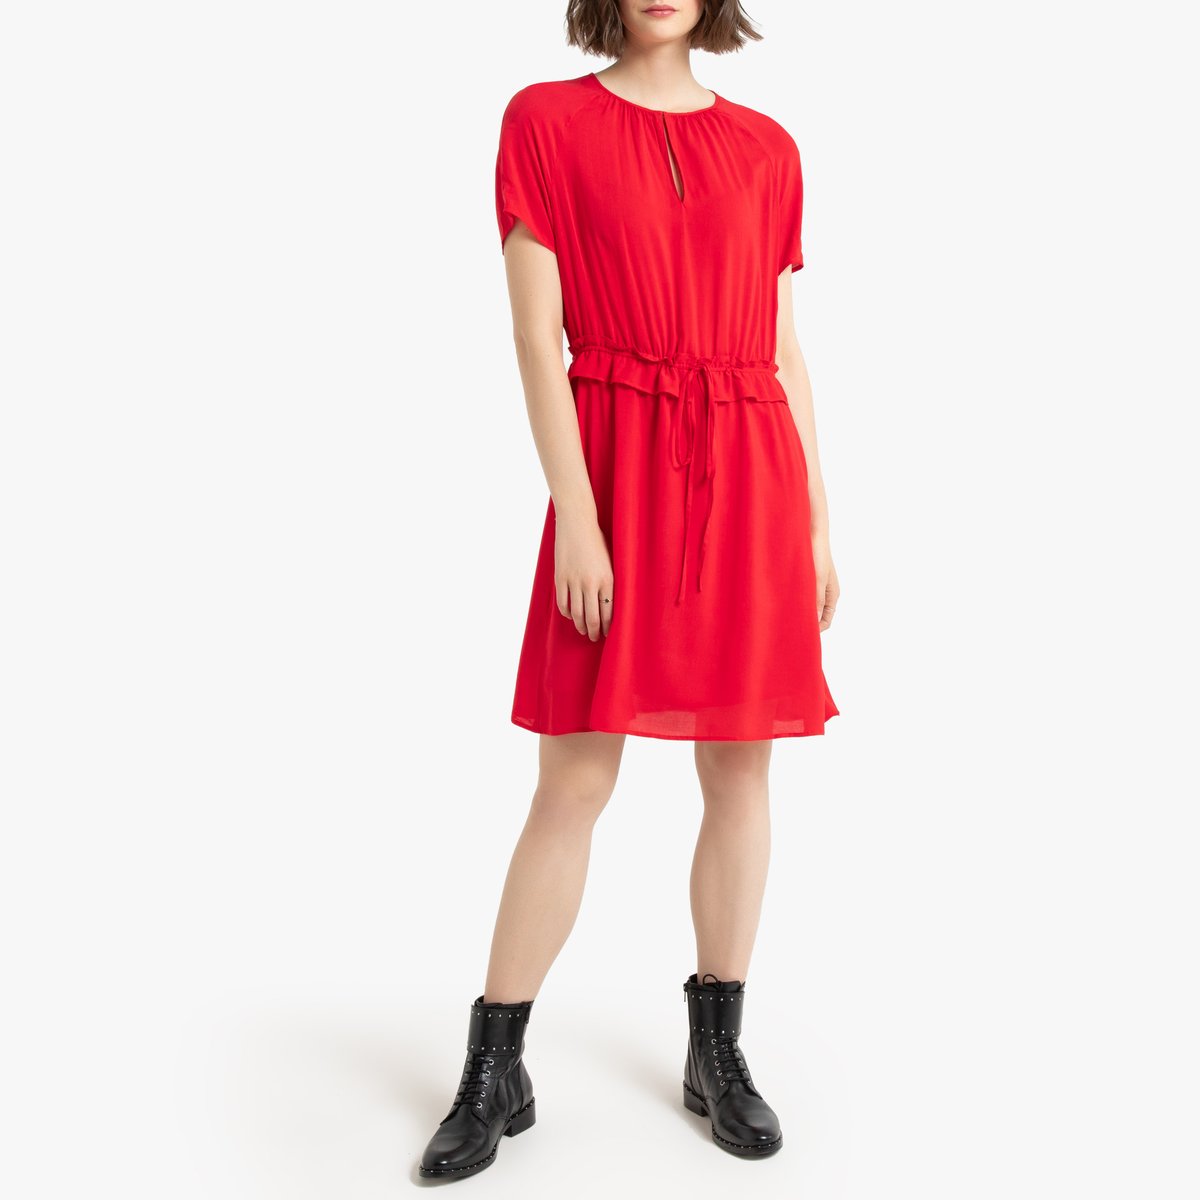 Платье La Redoute С коротким рукавом 42 (FR) - 48 (RUS) красный, размер 42 (FR) - 48 (RUS) С коротким рукавом 42 (FR) - 48 (RUS) красный - фото 2